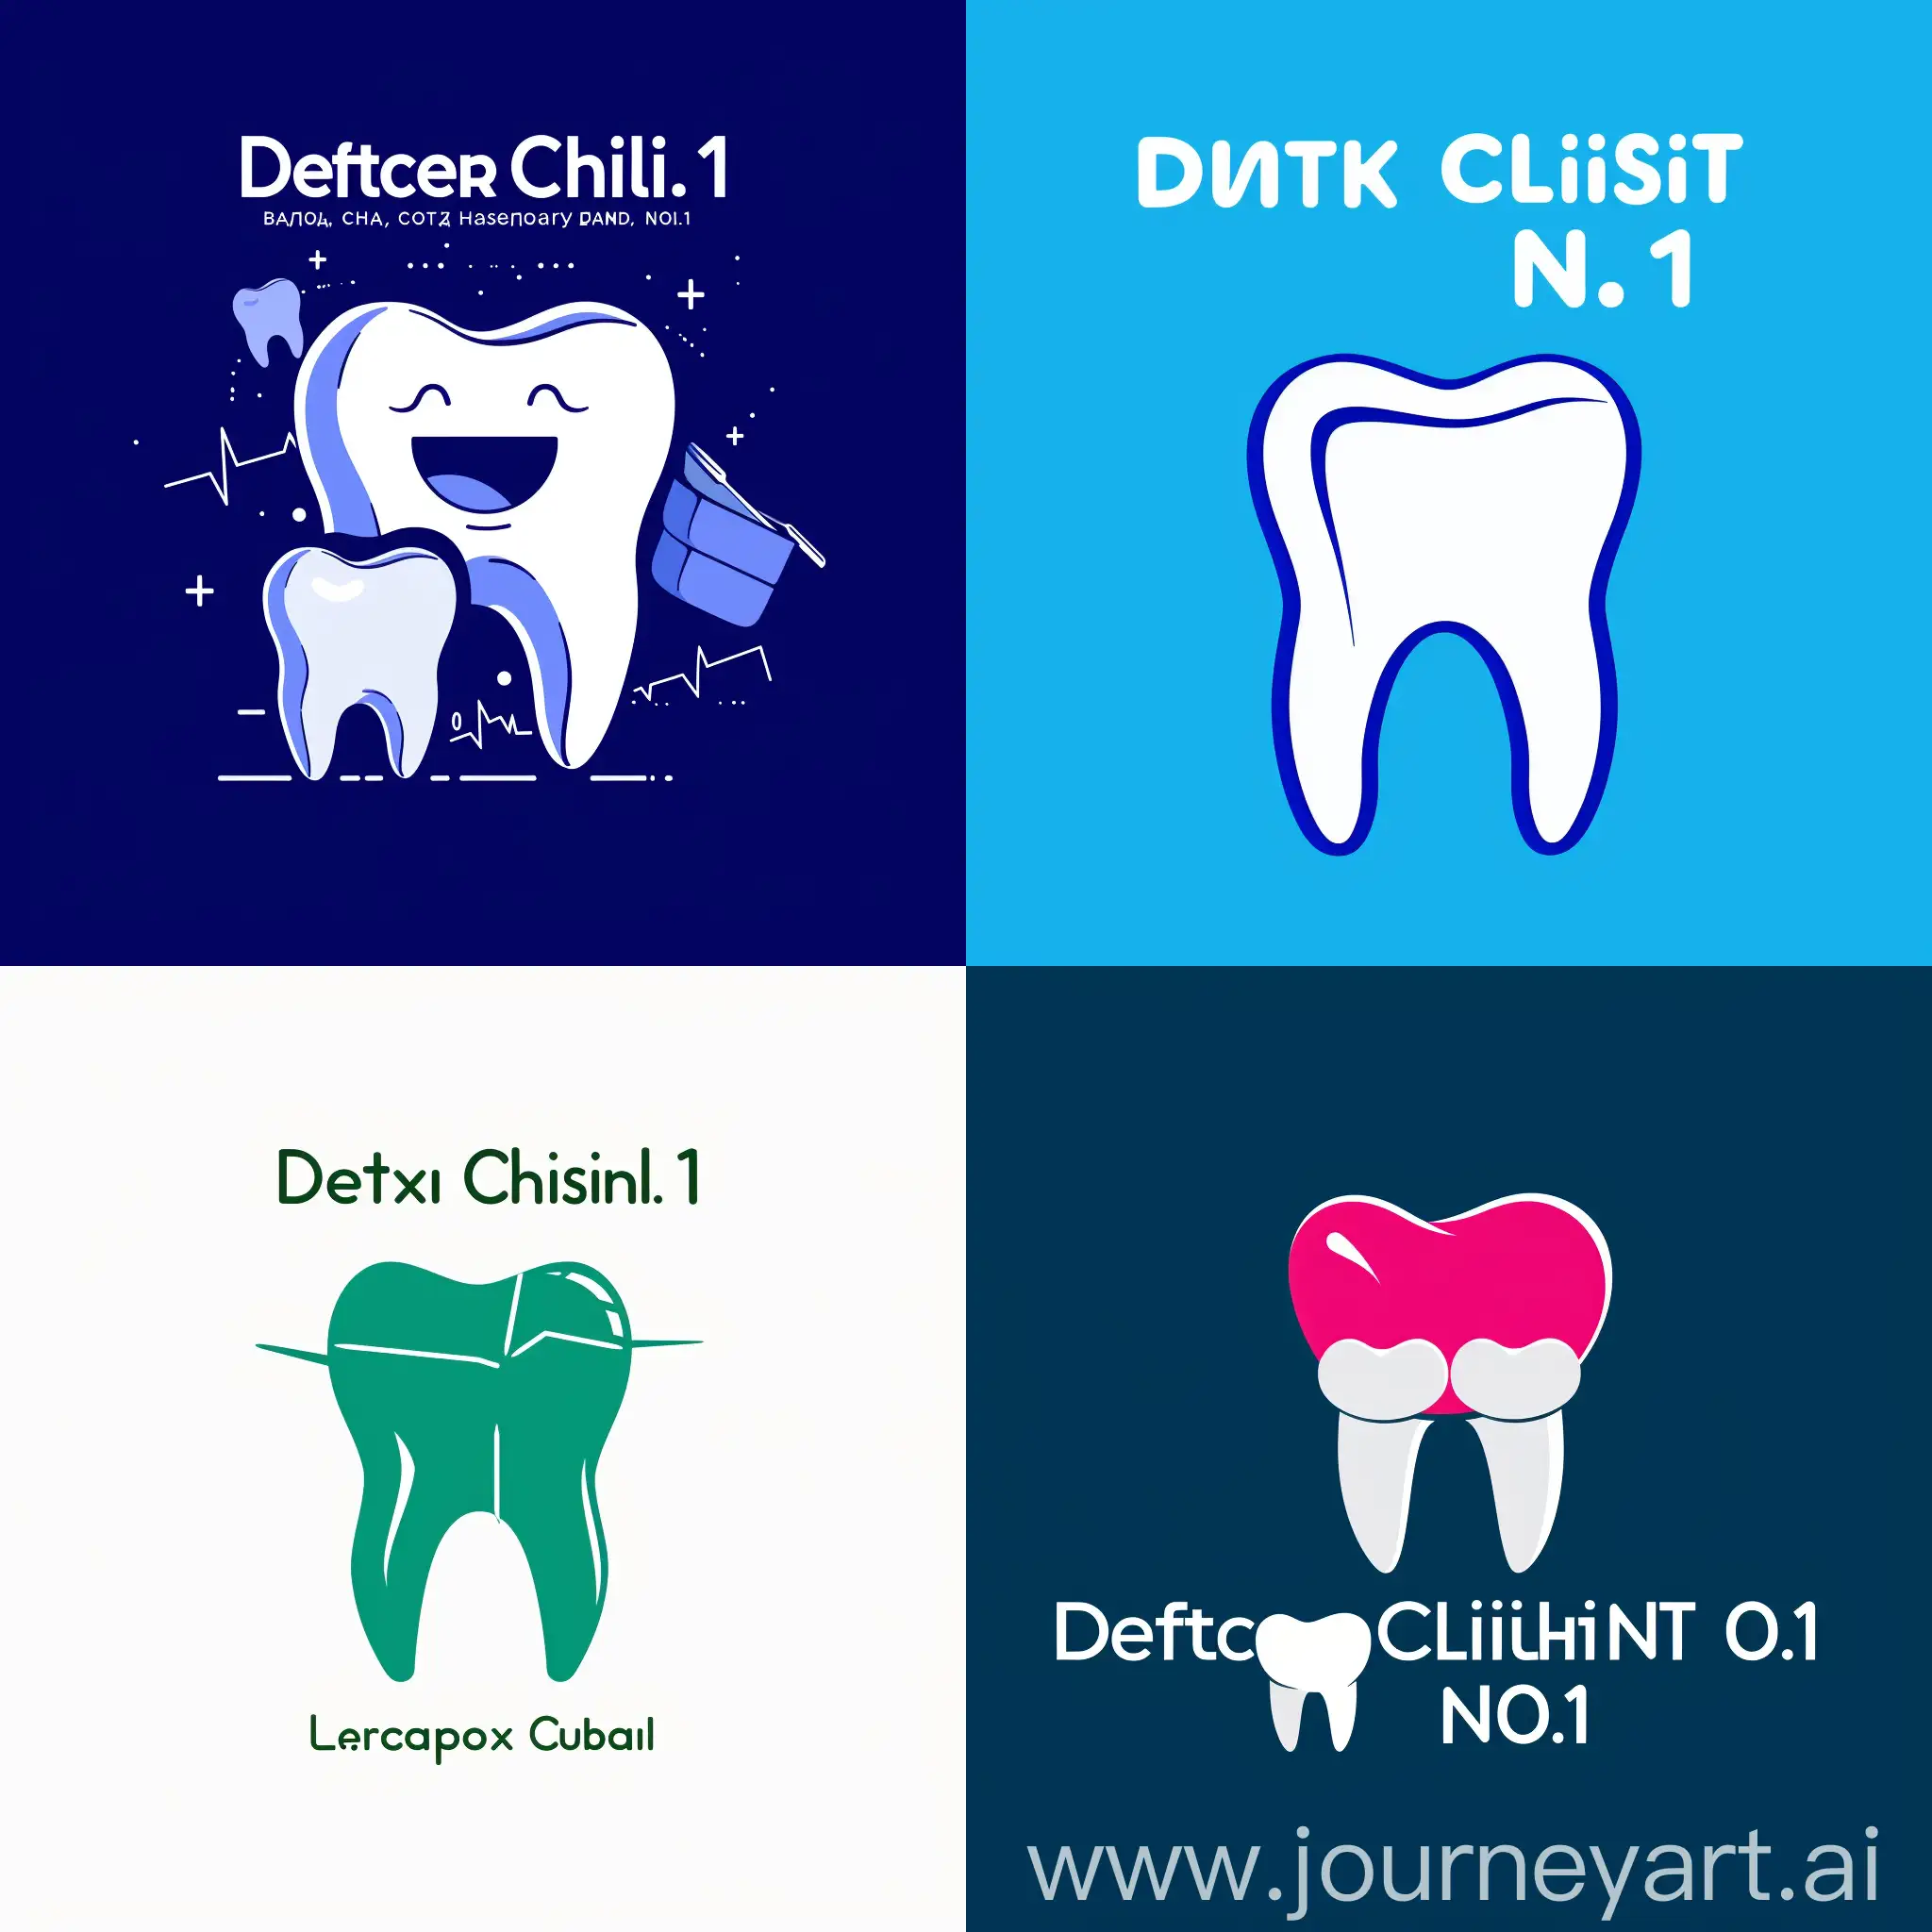 Создай логотип для Телеграм канала с названием "Стоматологическая поликлиника №1", логотип должен отражать стоматологию.